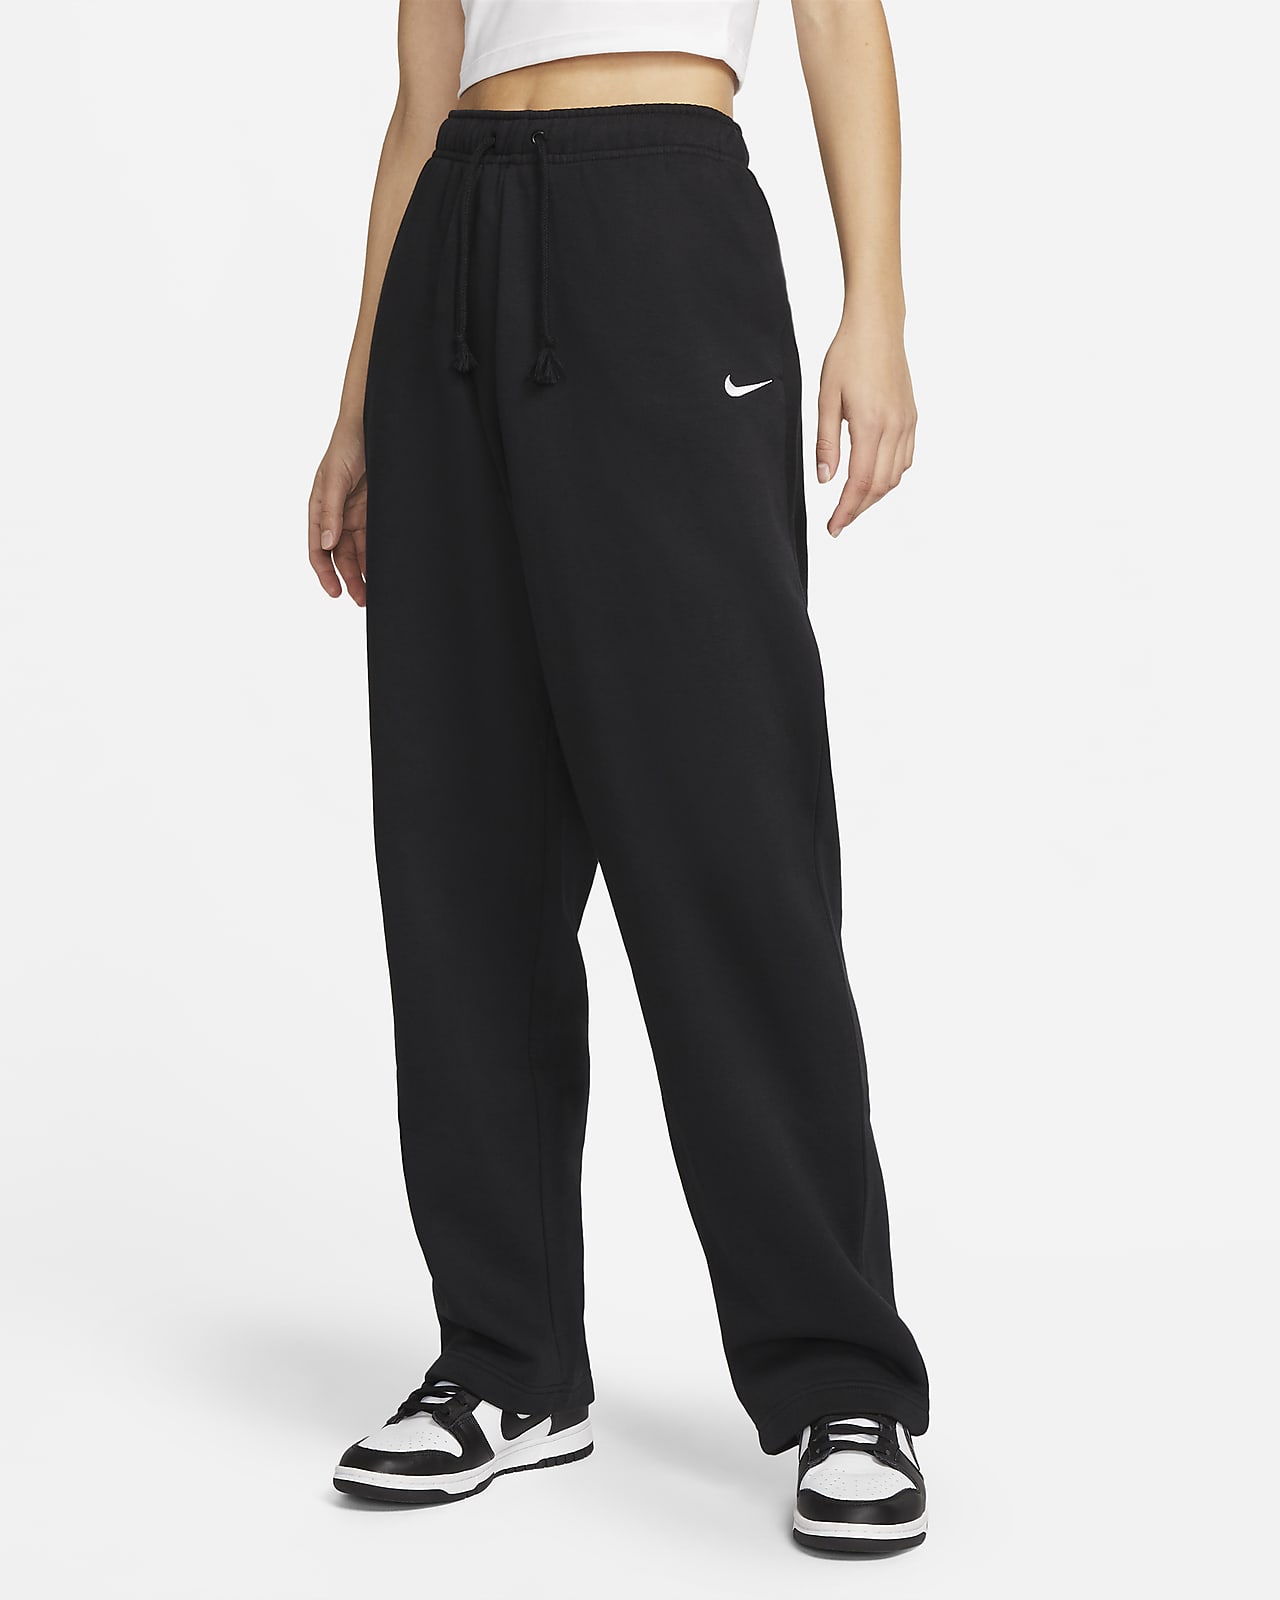 Γυναικείο φλις παντελόνι μεσαίου ύψους με ανοιχτό τελείωμα Nike Sportswear Collection Essential